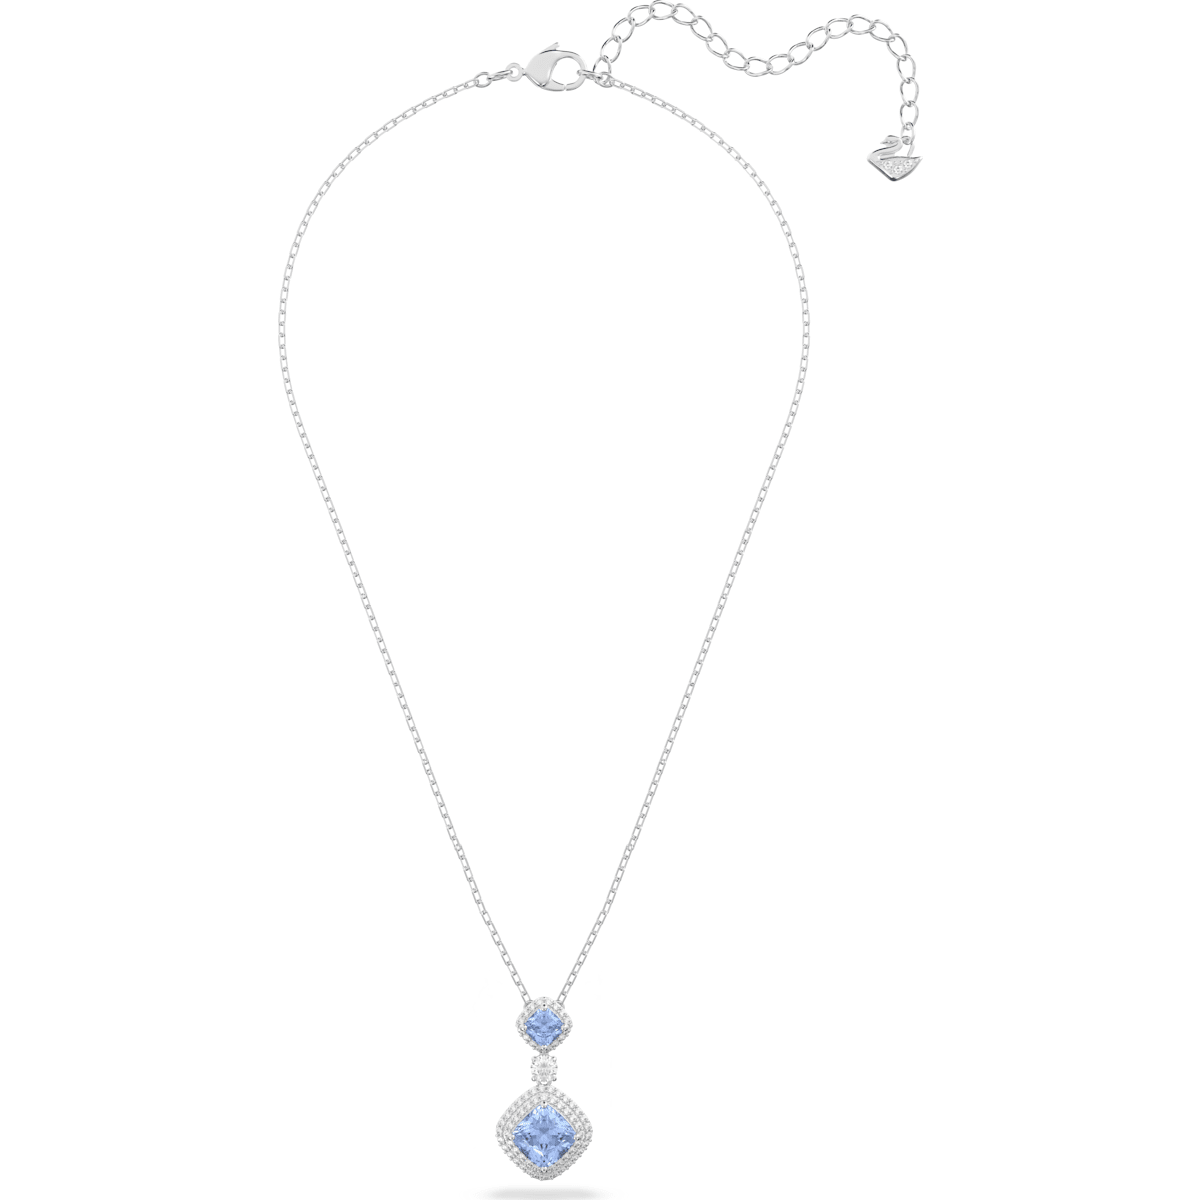 Swarovski - Angelic Halskette, Blau, Rhodiniert - CRYSTAL UNTERBERGER